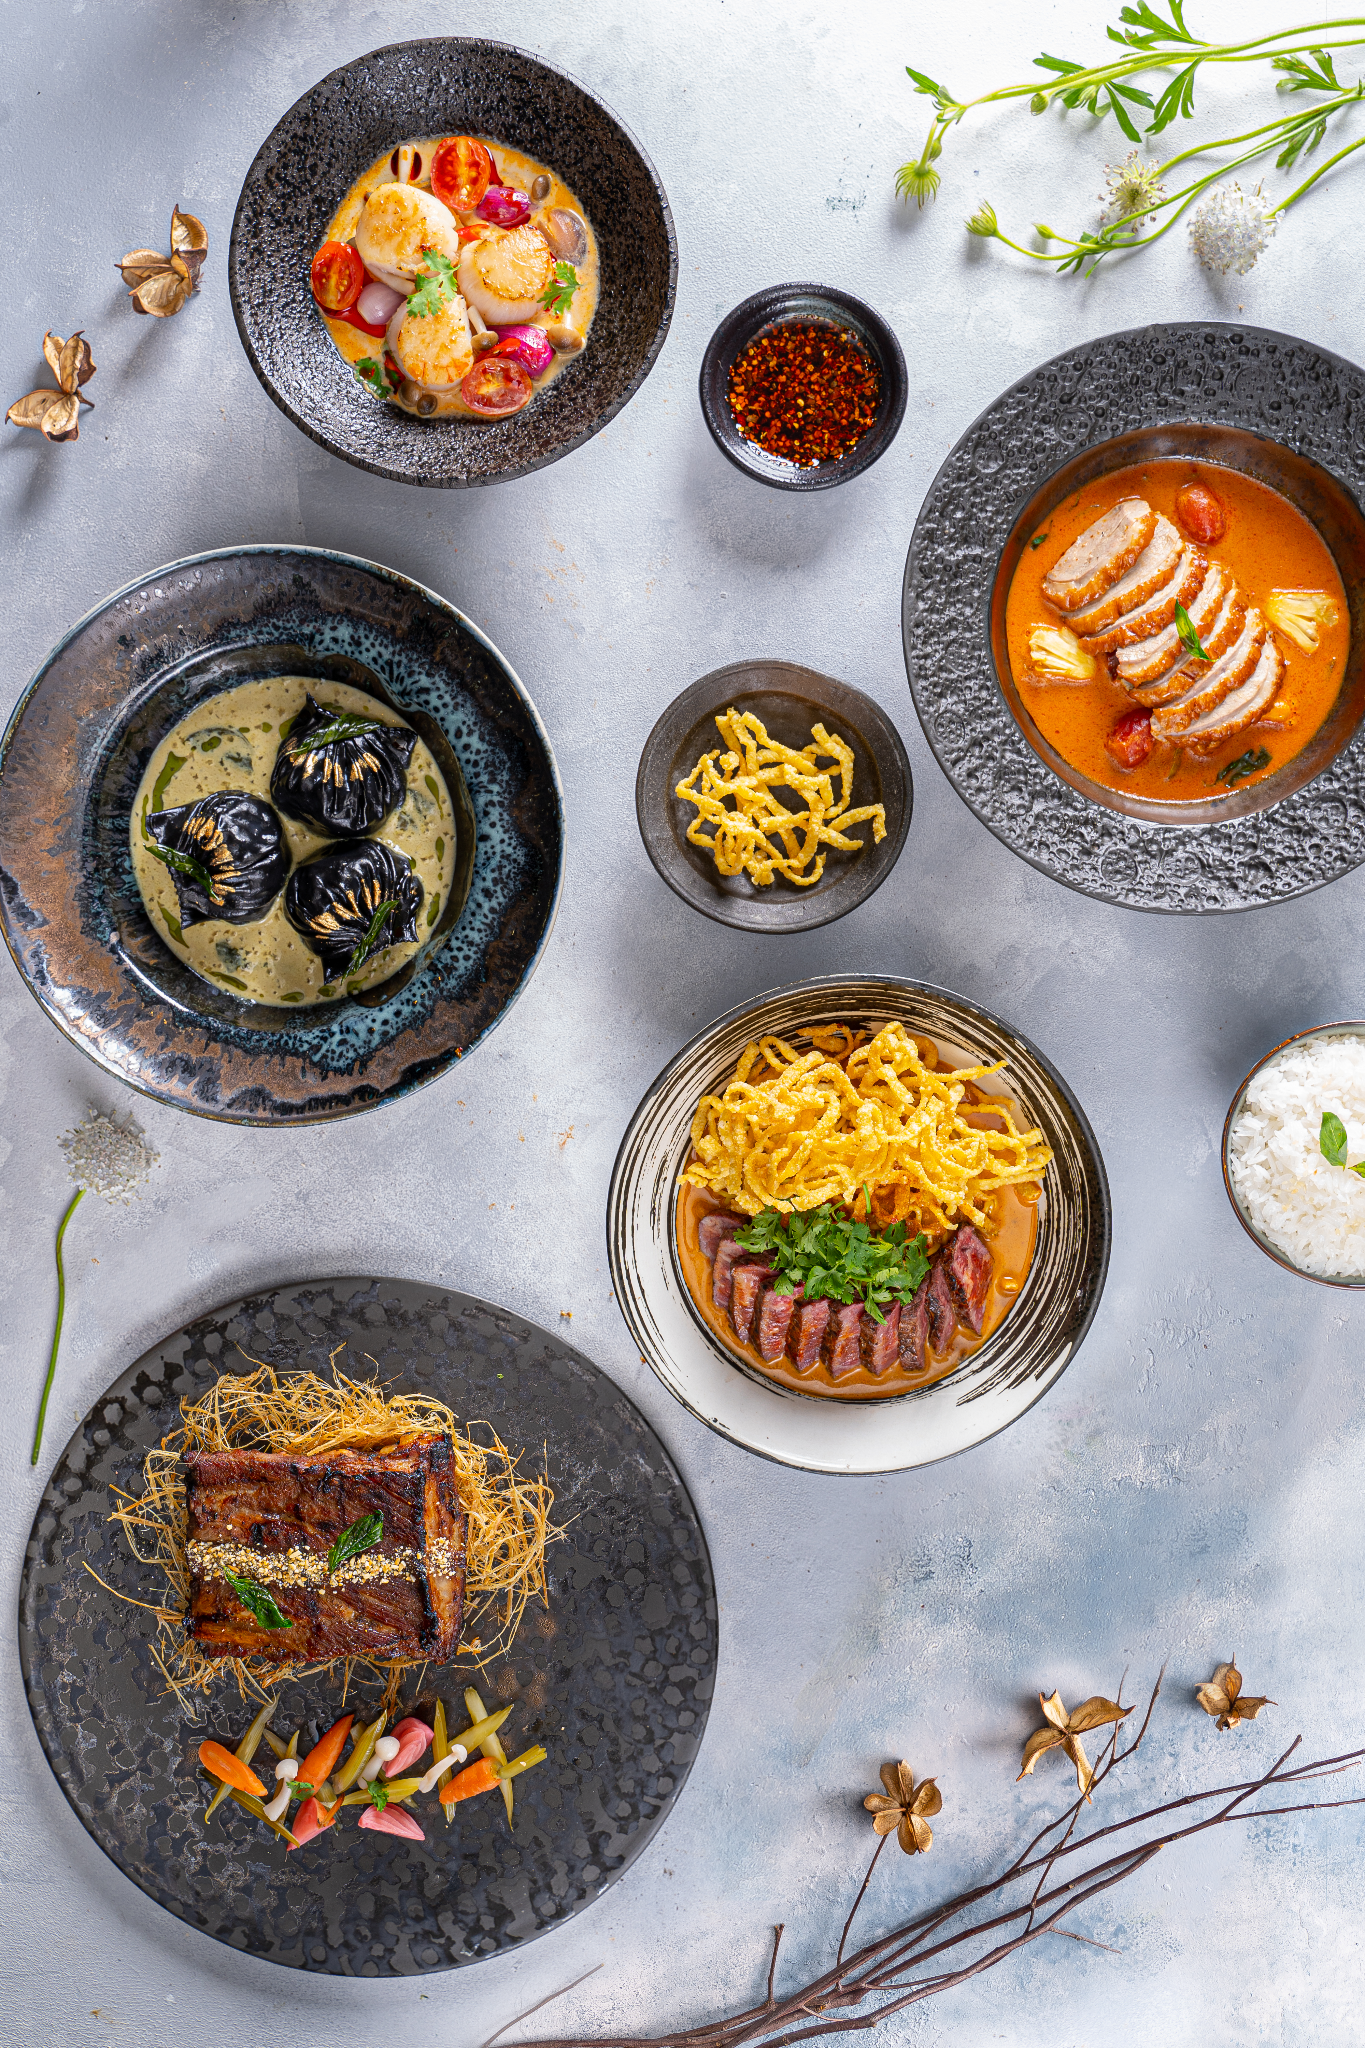 Trải nghiệm Modern Asian Cuisine - say mê tinh hoa ẩm thực Châu Á đương đại - Ảnh 4.